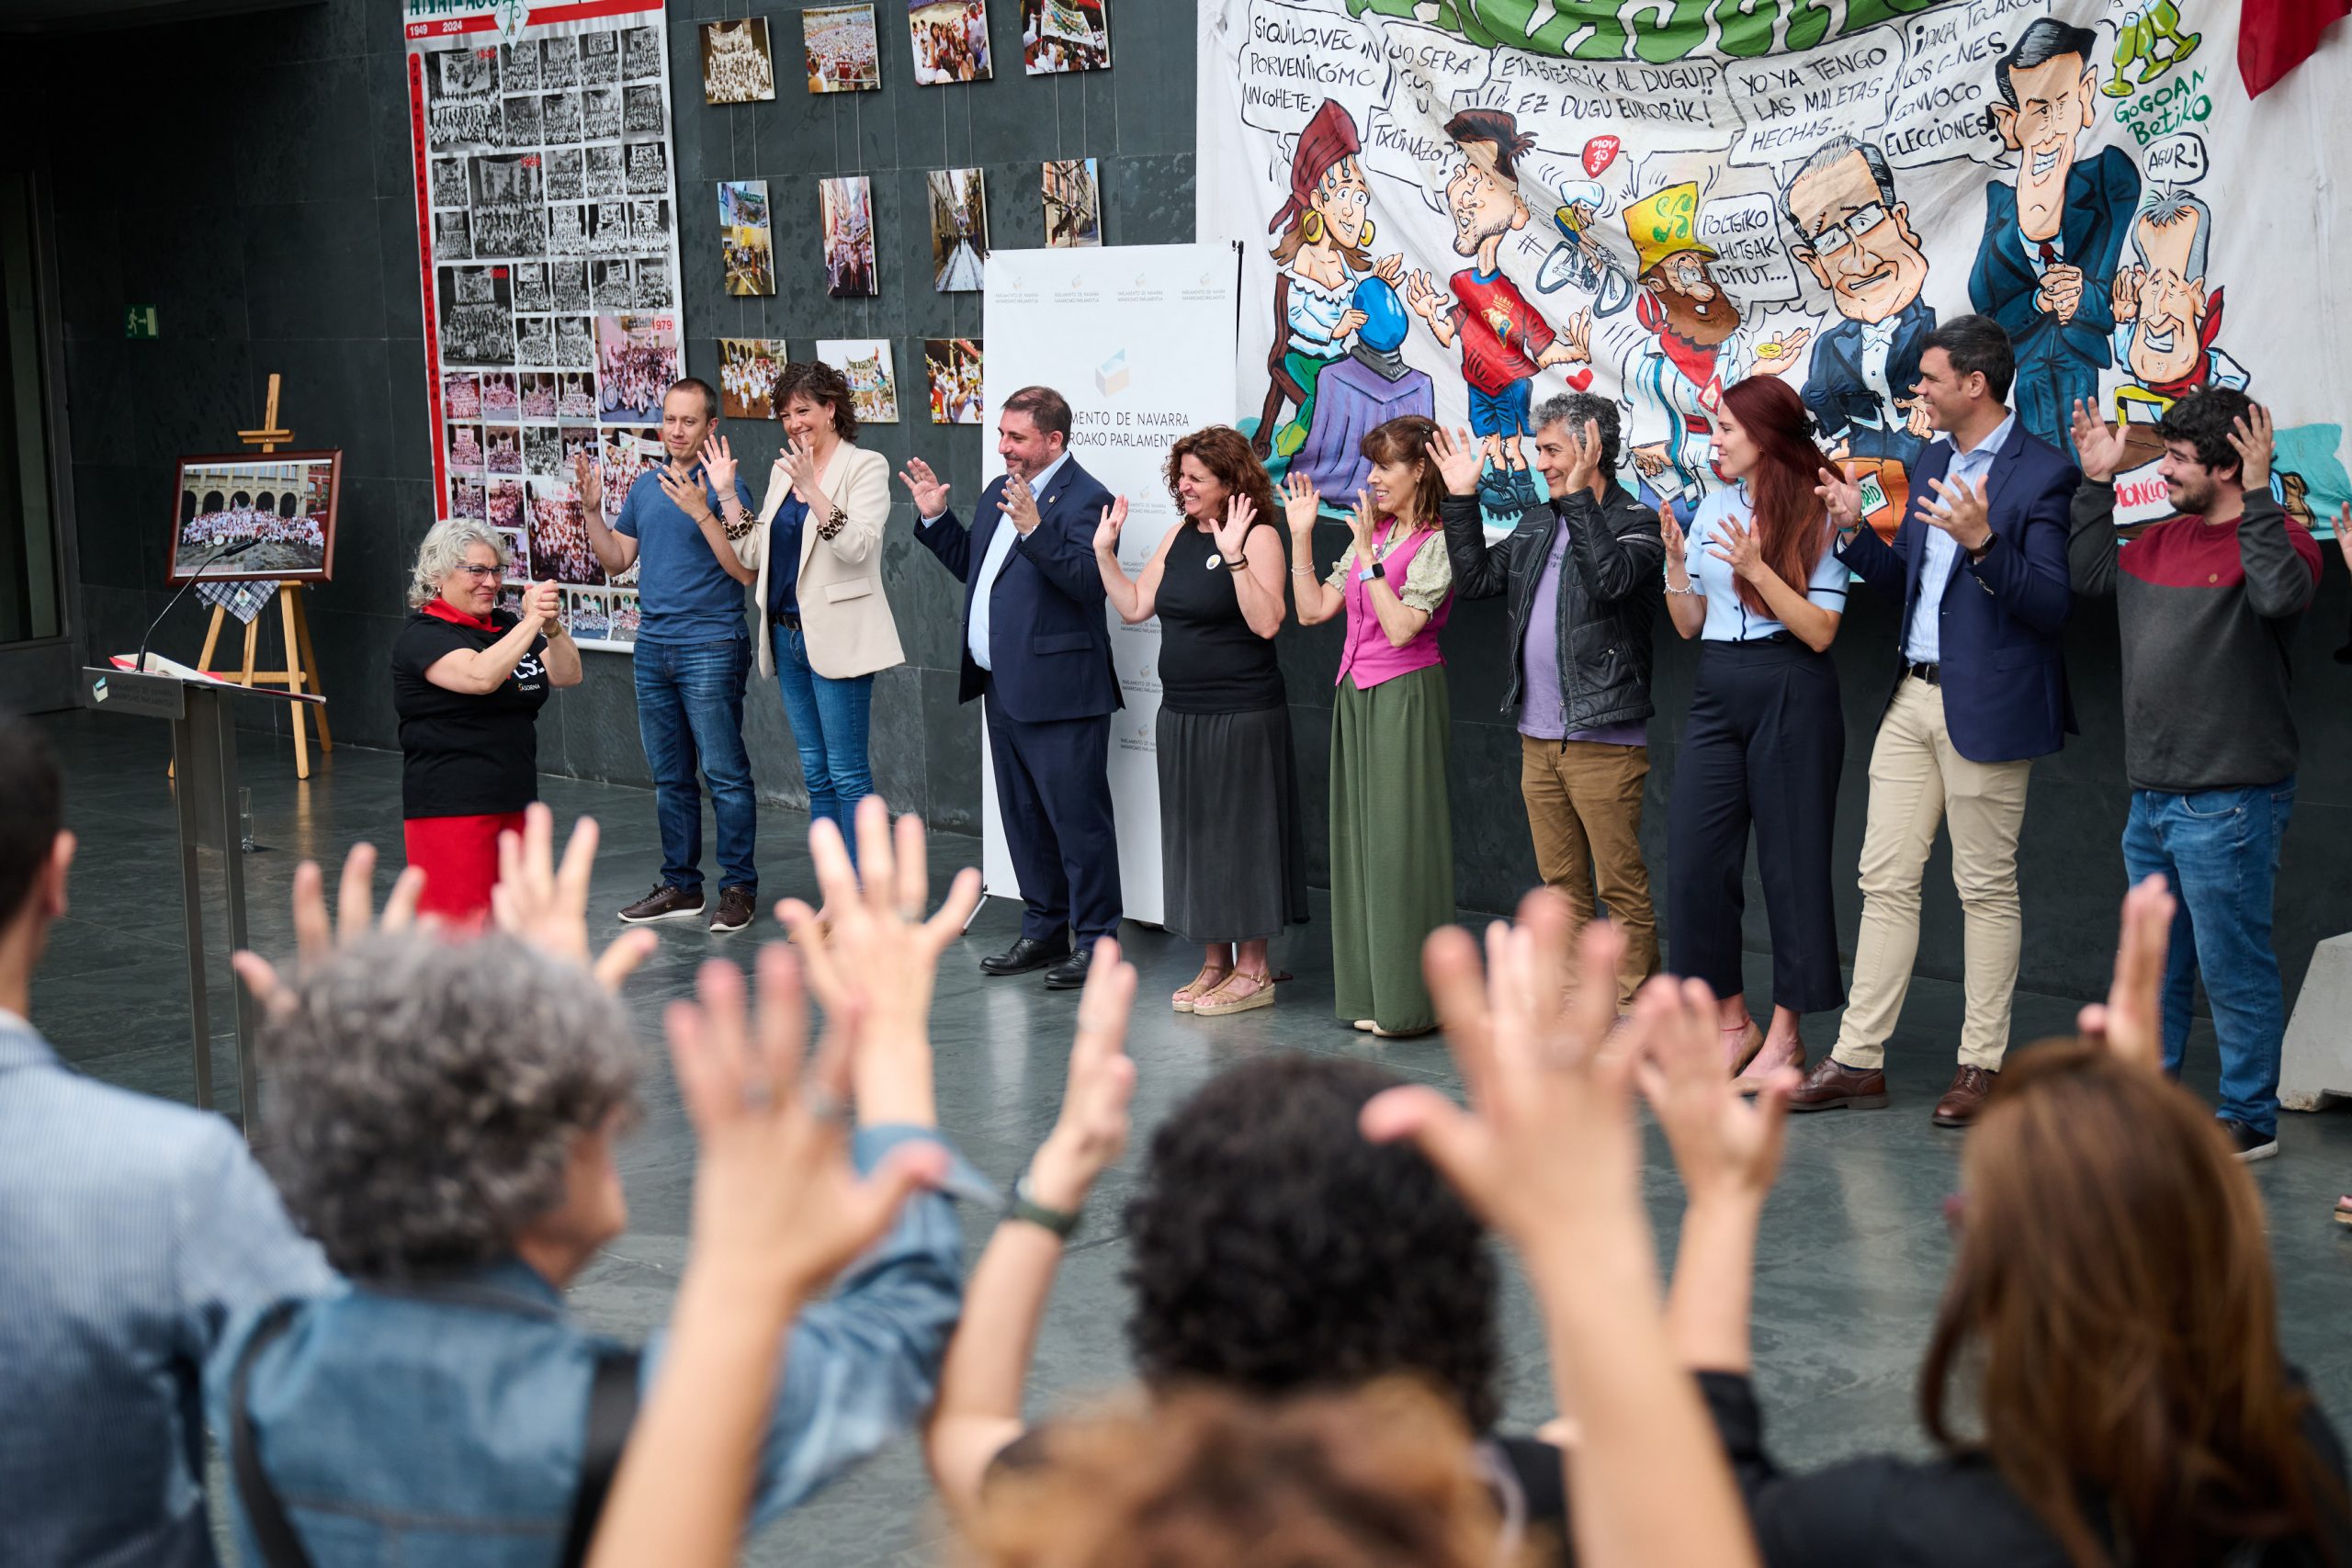 Parlamentarios y parlamentarias junto al presidente del Parlamento, Unai Hualde, y miembros de ASORNA en un momento del acto de celebración del Día Nacional de las Lenguas de Signo Españolas